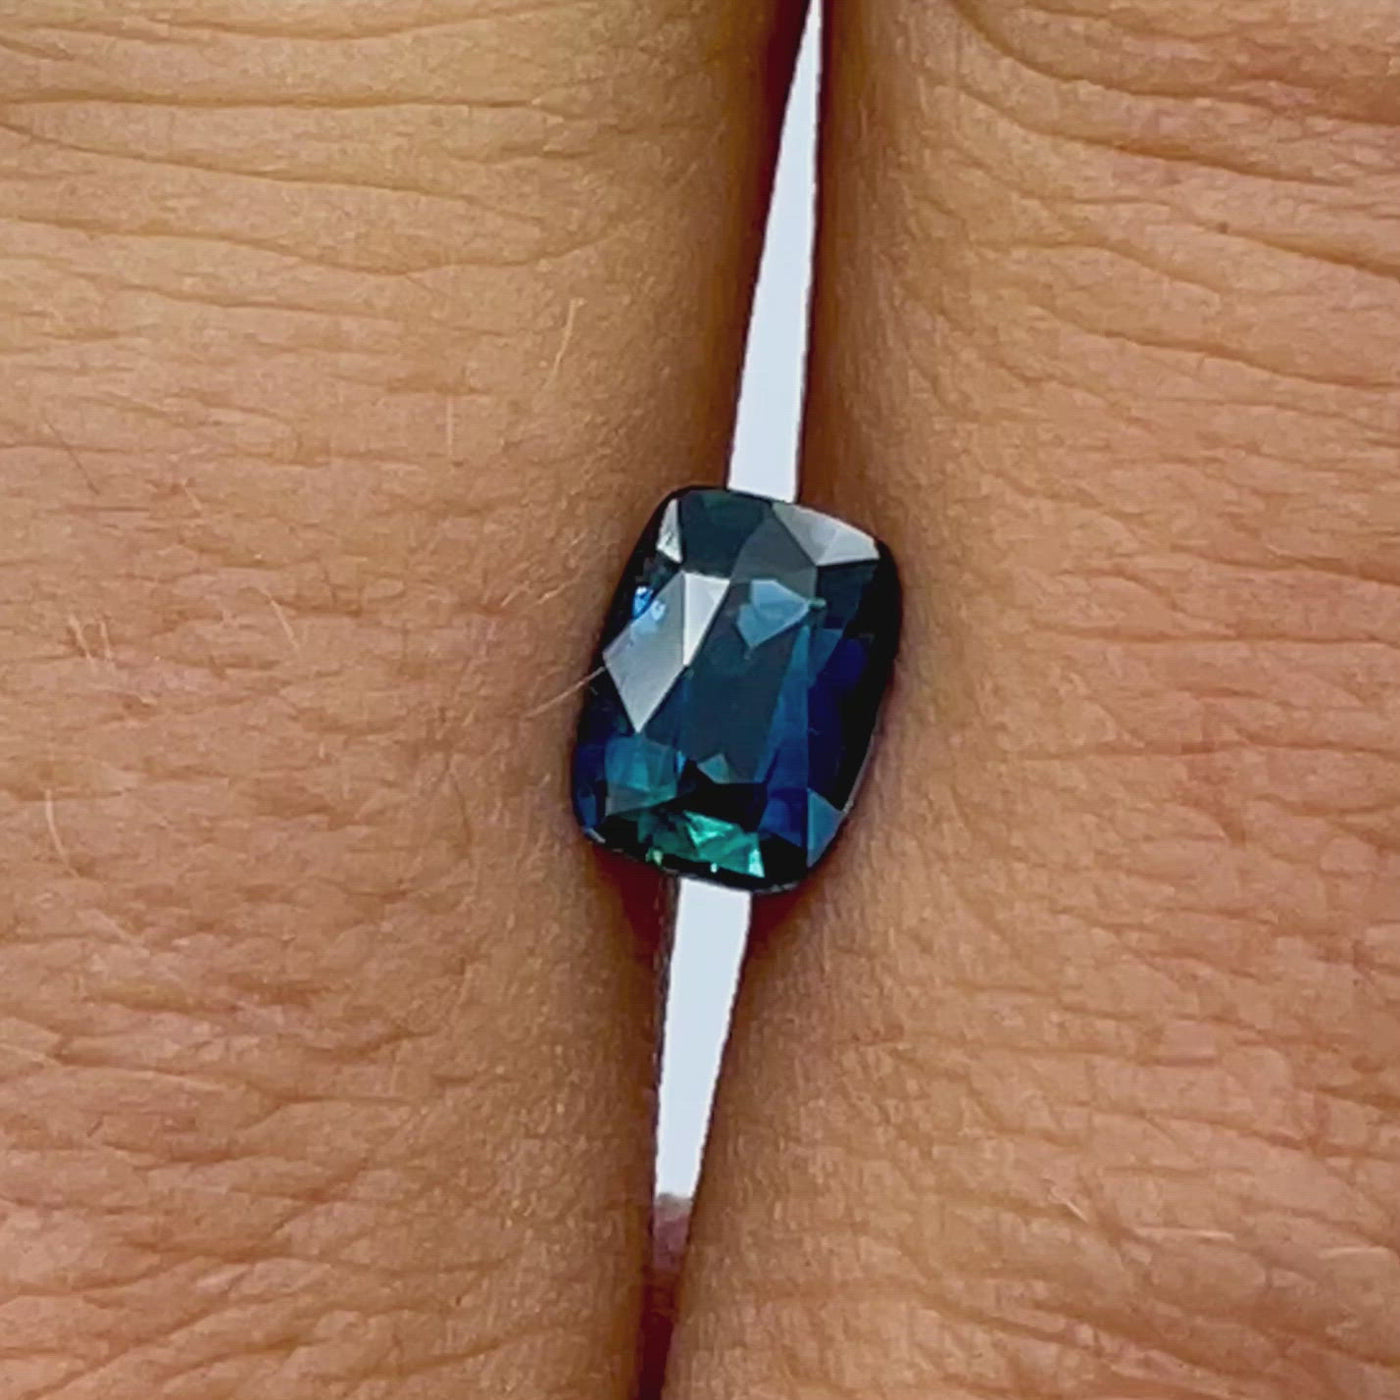 Saphir bleu-vert (teal) 1.47 carats coussin